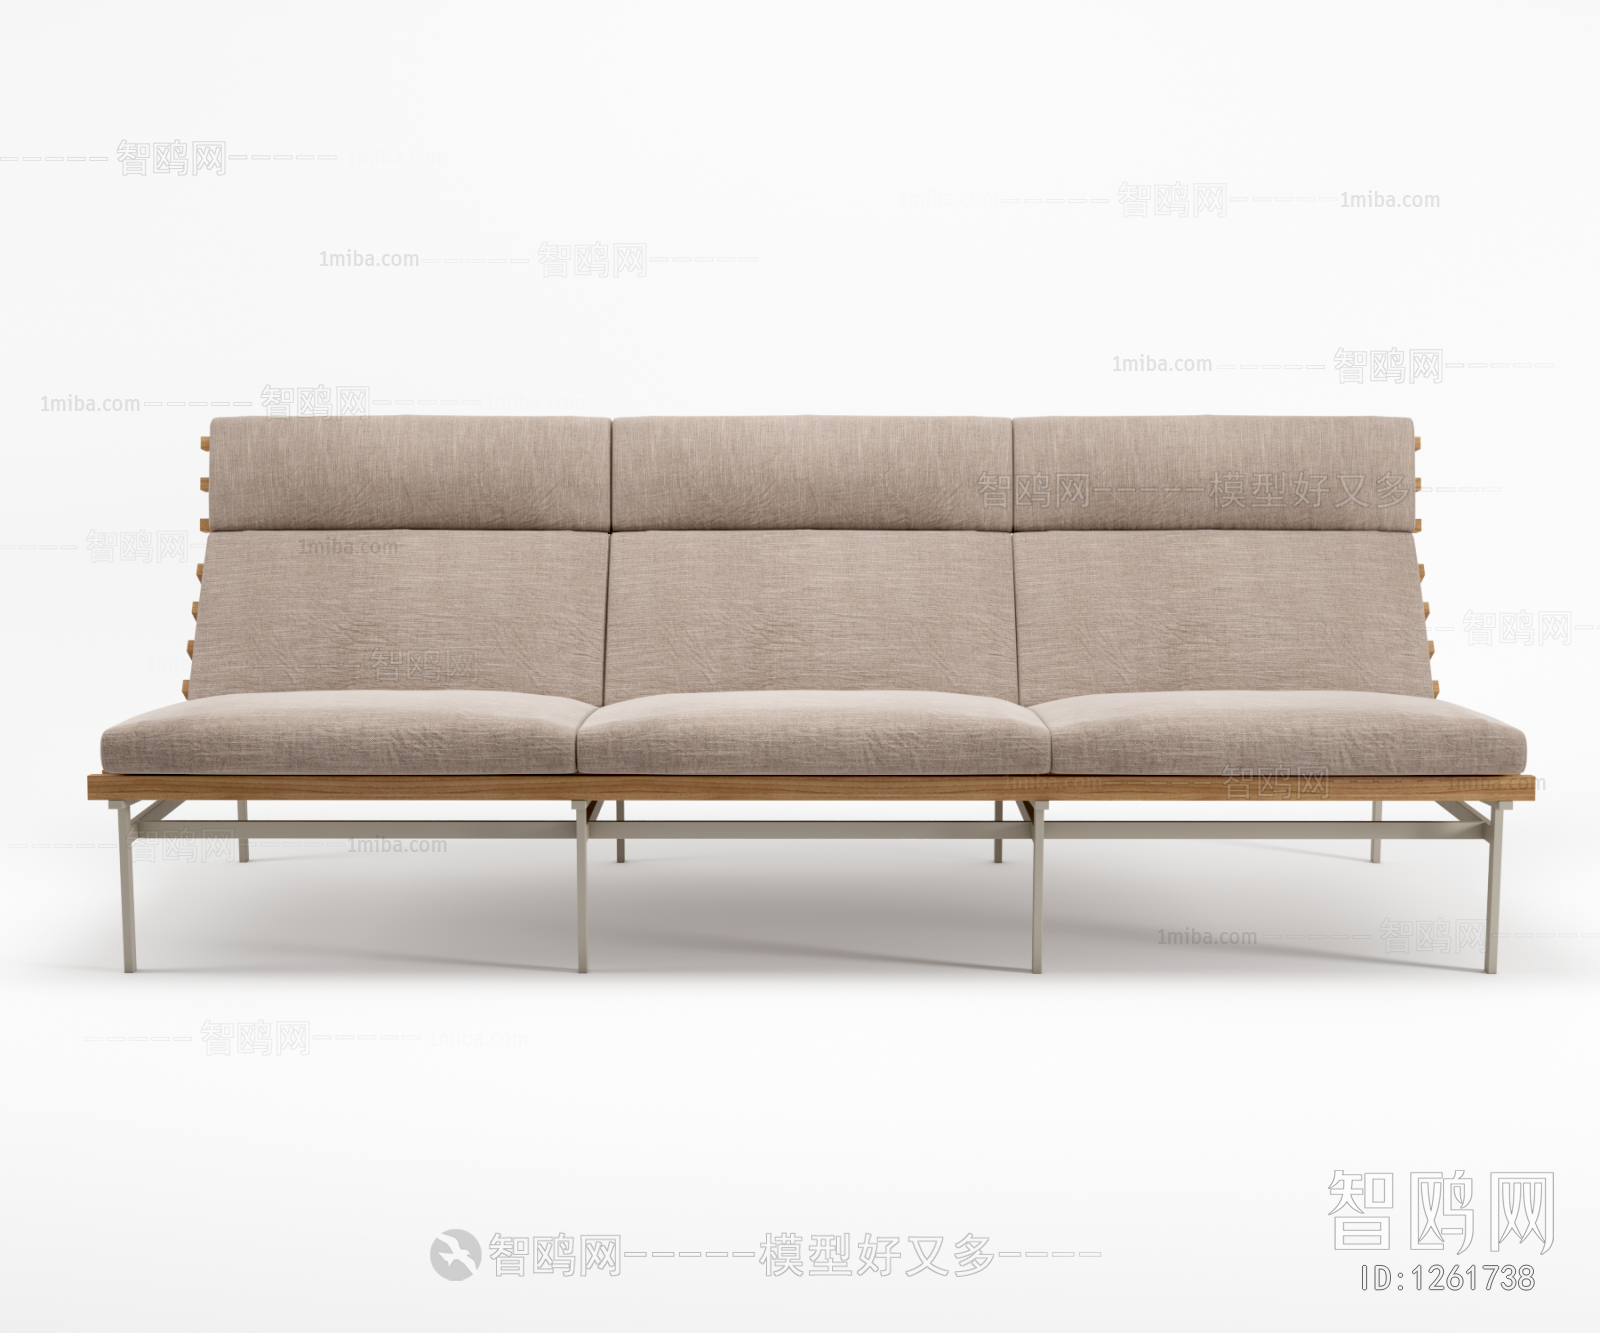 Modern Outdoor Sofa